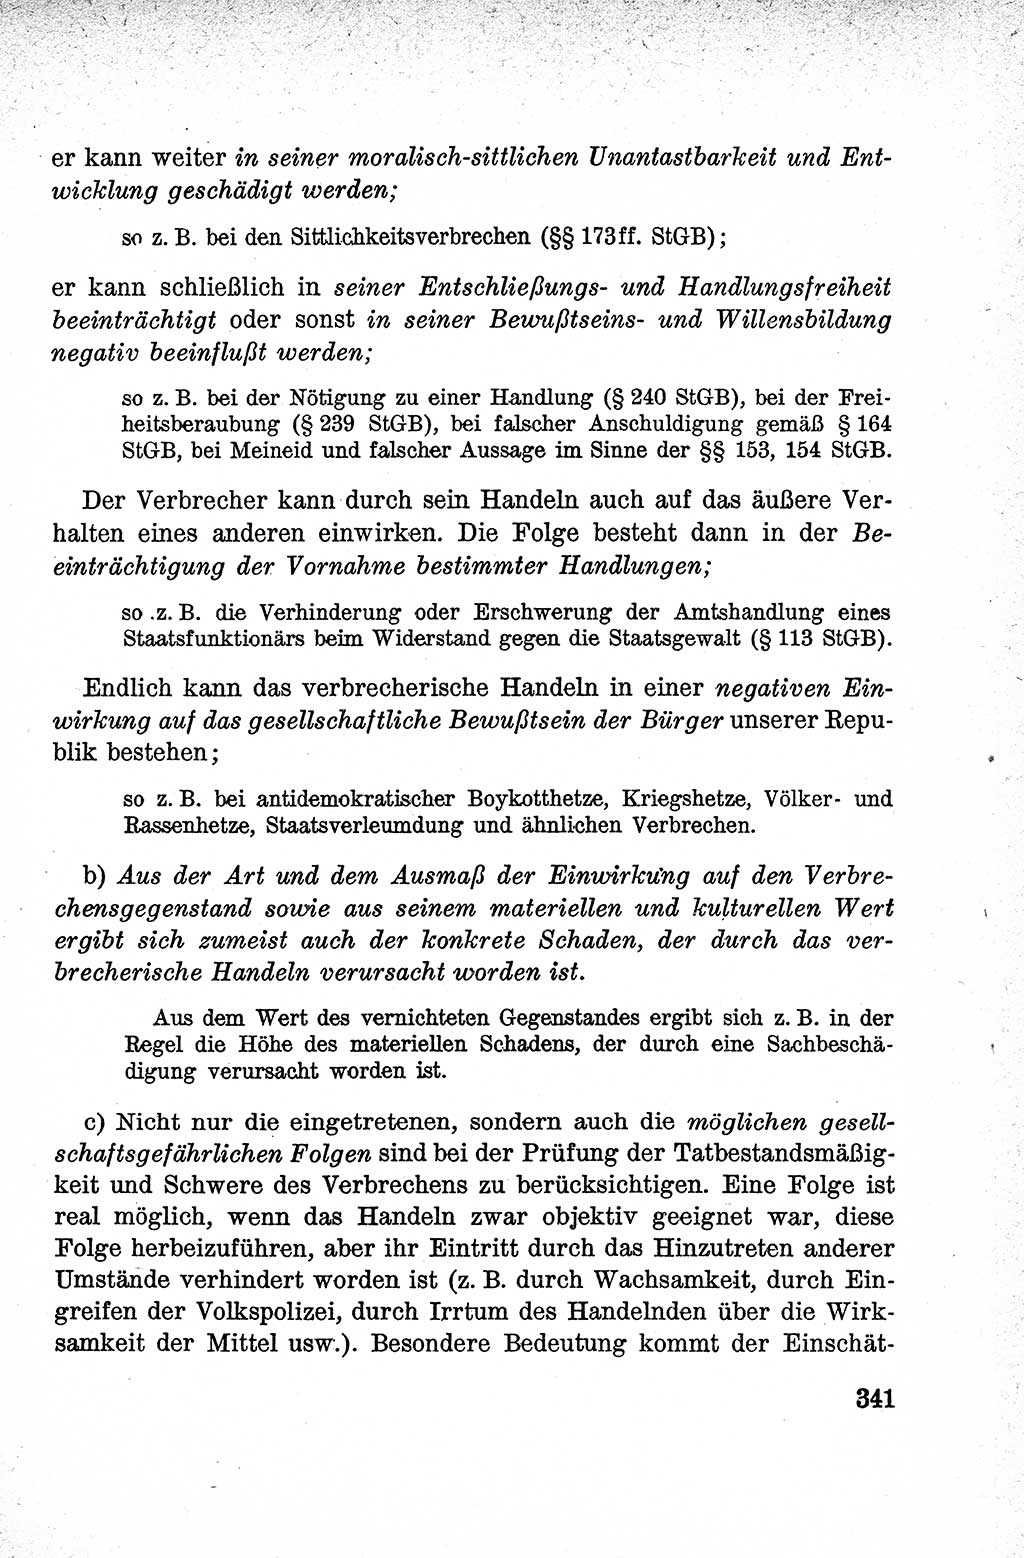 Lehrbuch des Strafrechts der Deutschen Demokratischen Republik (DDR), Allgemeiner Teil 1959, Seite 341 (Lb. Strafr. DDR AT 1959, S. 341)